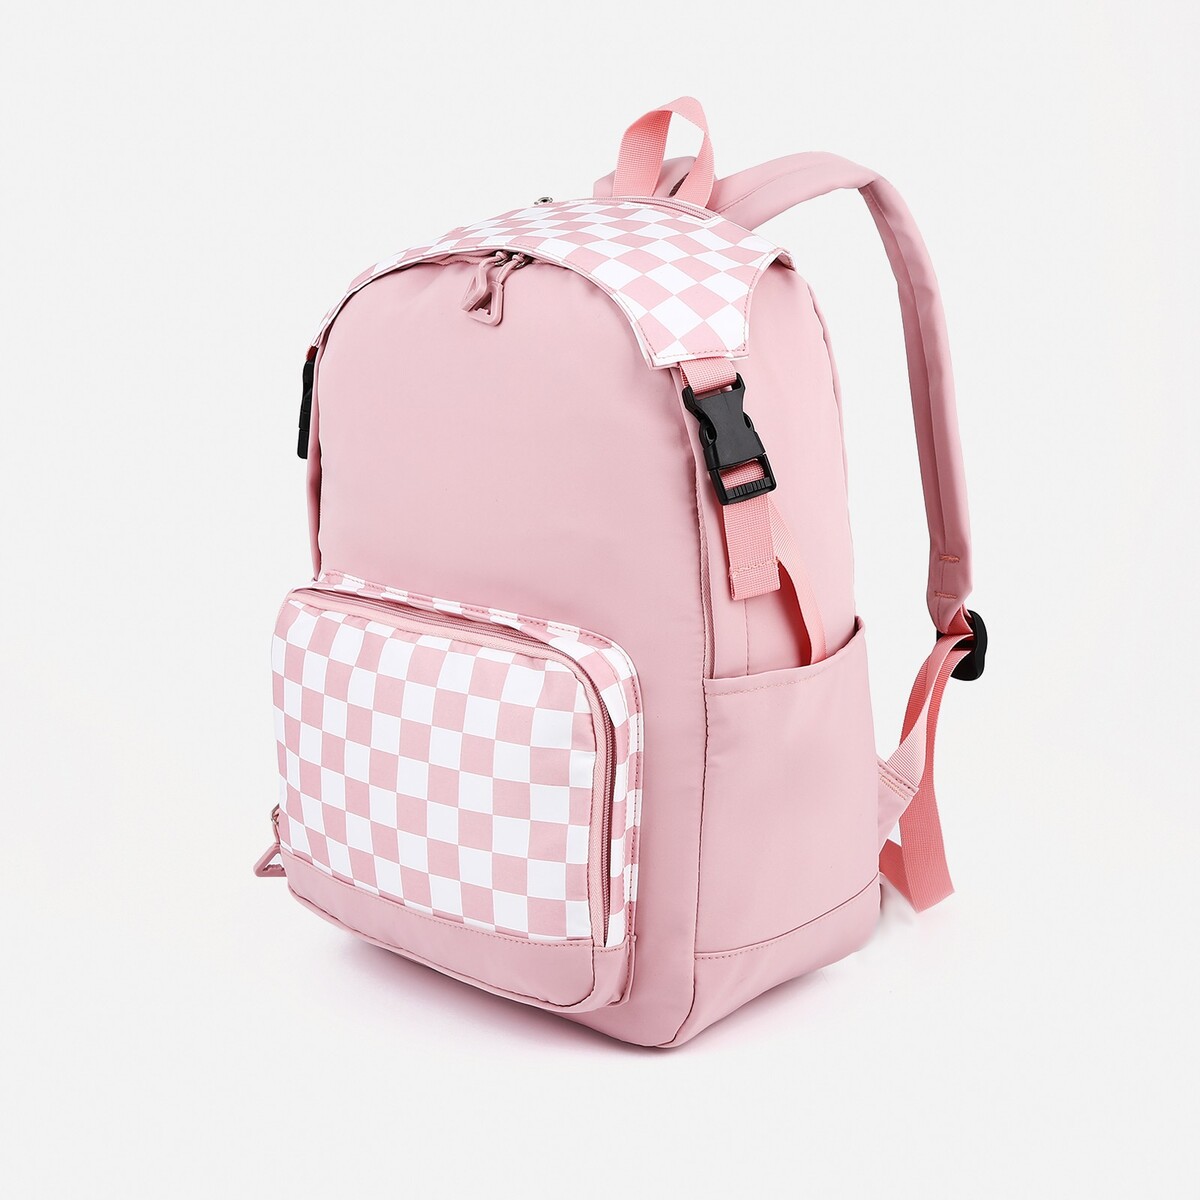 Рюкзак школьный из текстиля, 5 карманов, цвет розовый рюкзак школьный из текстиля на молнии 5 карманов розовый